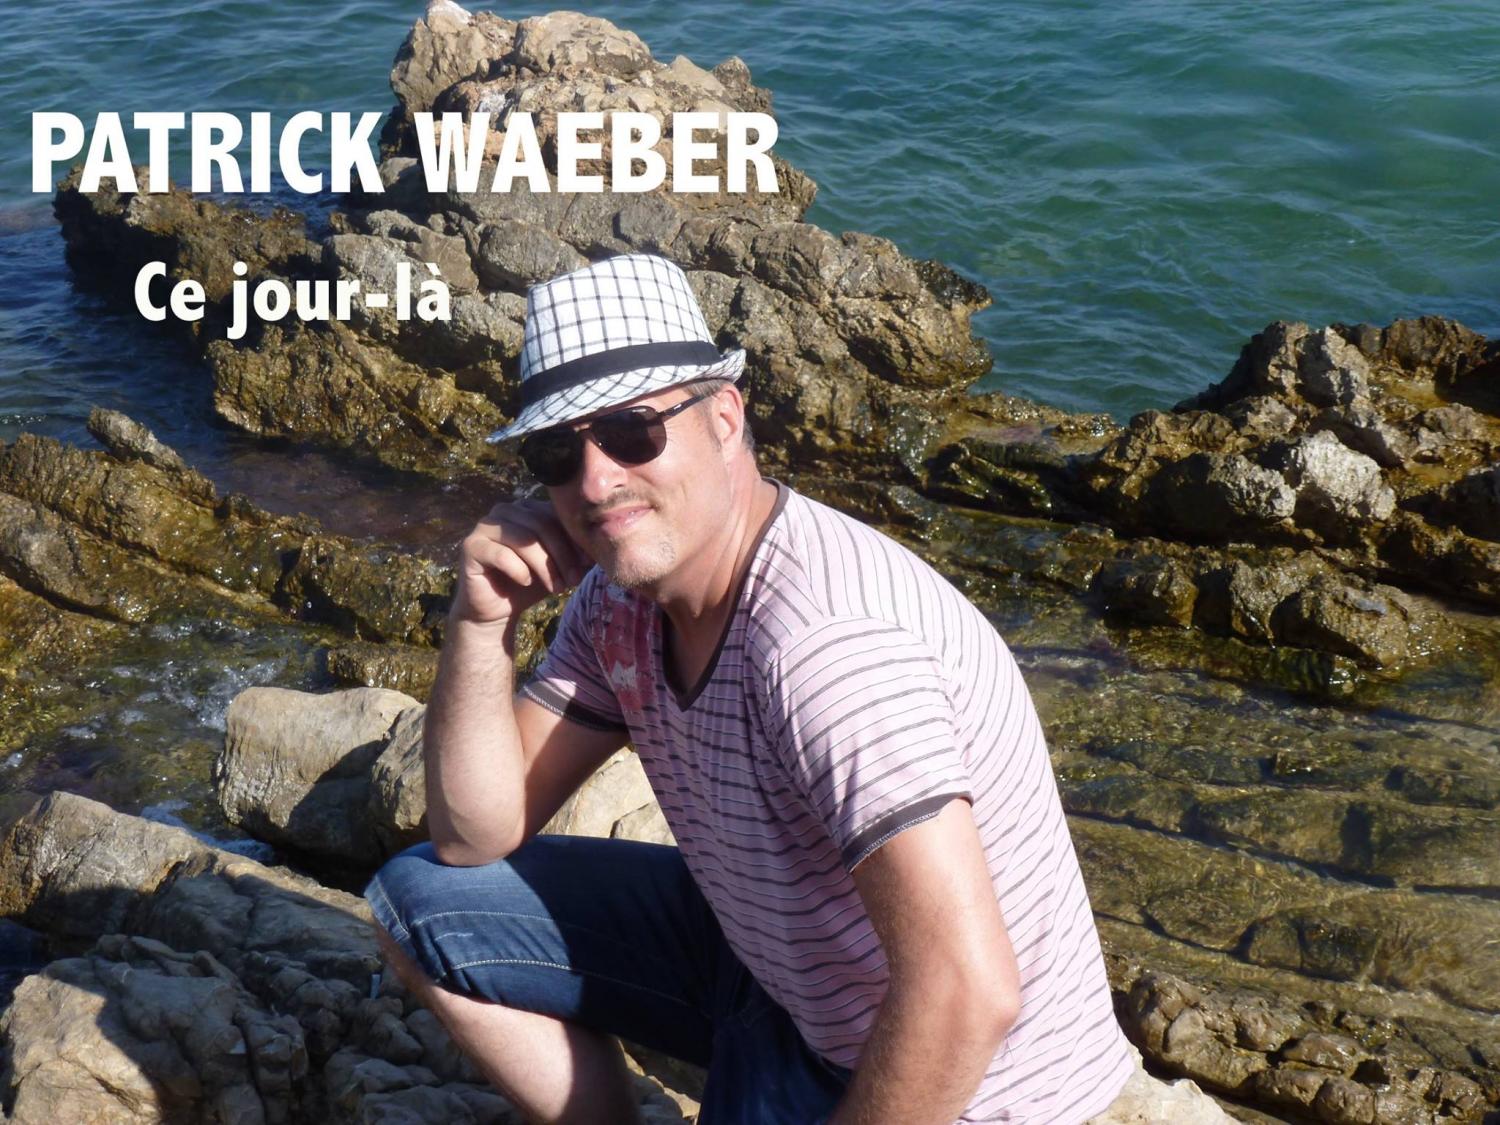 Nouveau single de Patrick Waeber "CE JOUR-LÀ"! Sortie le 01.12.2015